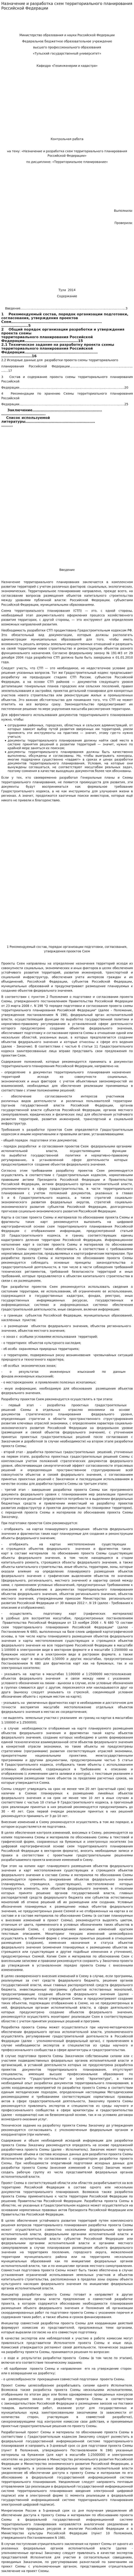 Назначение и разработка схем территориального планирования Российской Федерации